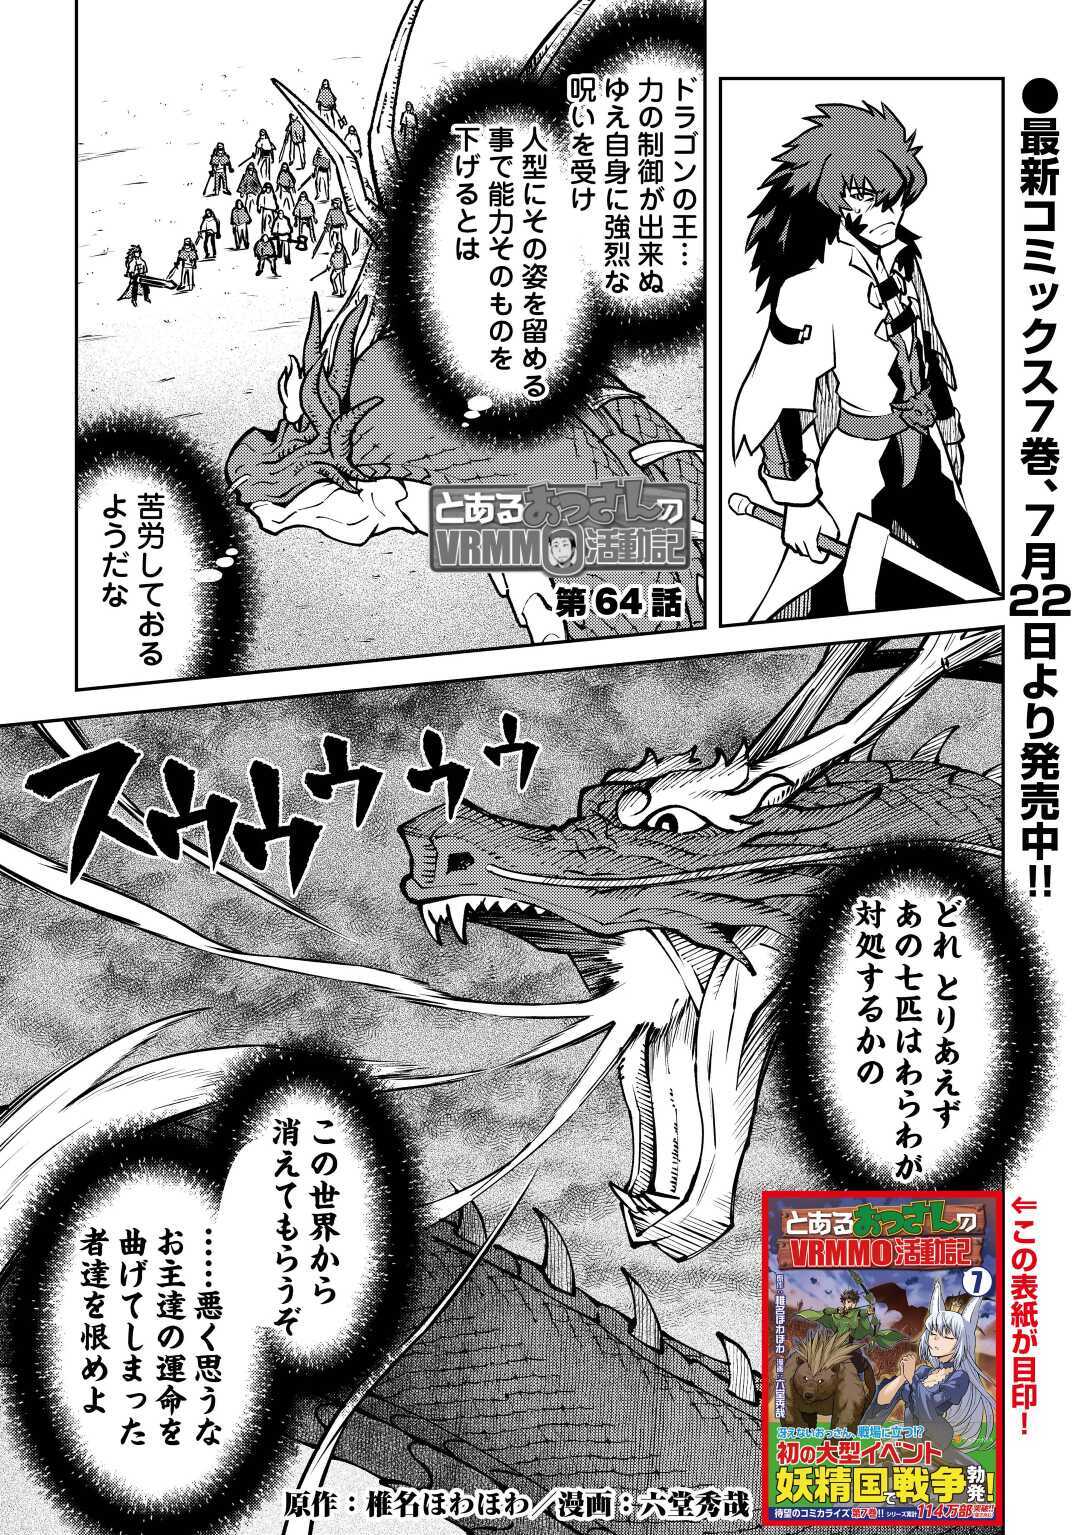 Toaru Ossan no VRMMO Katsudouki - Chapter 64 - Page 1